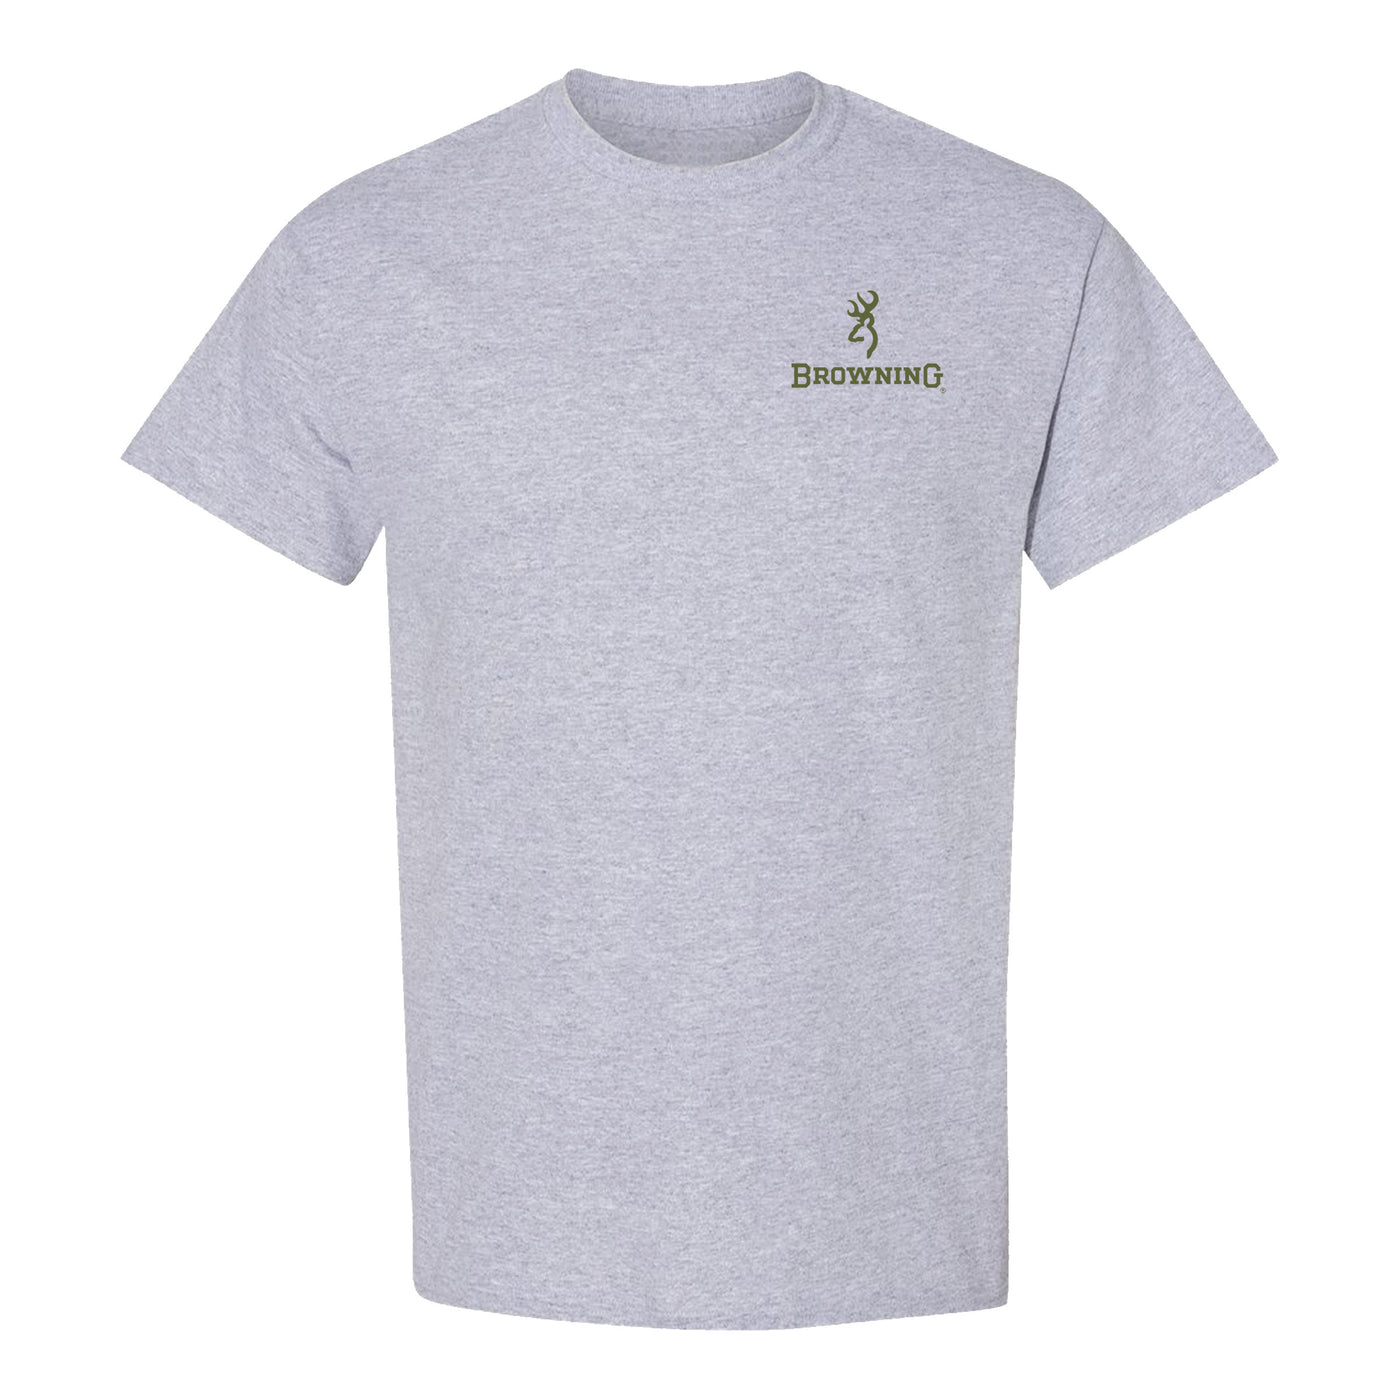 Browning “Diamond” short-sleeved t-shirt for men